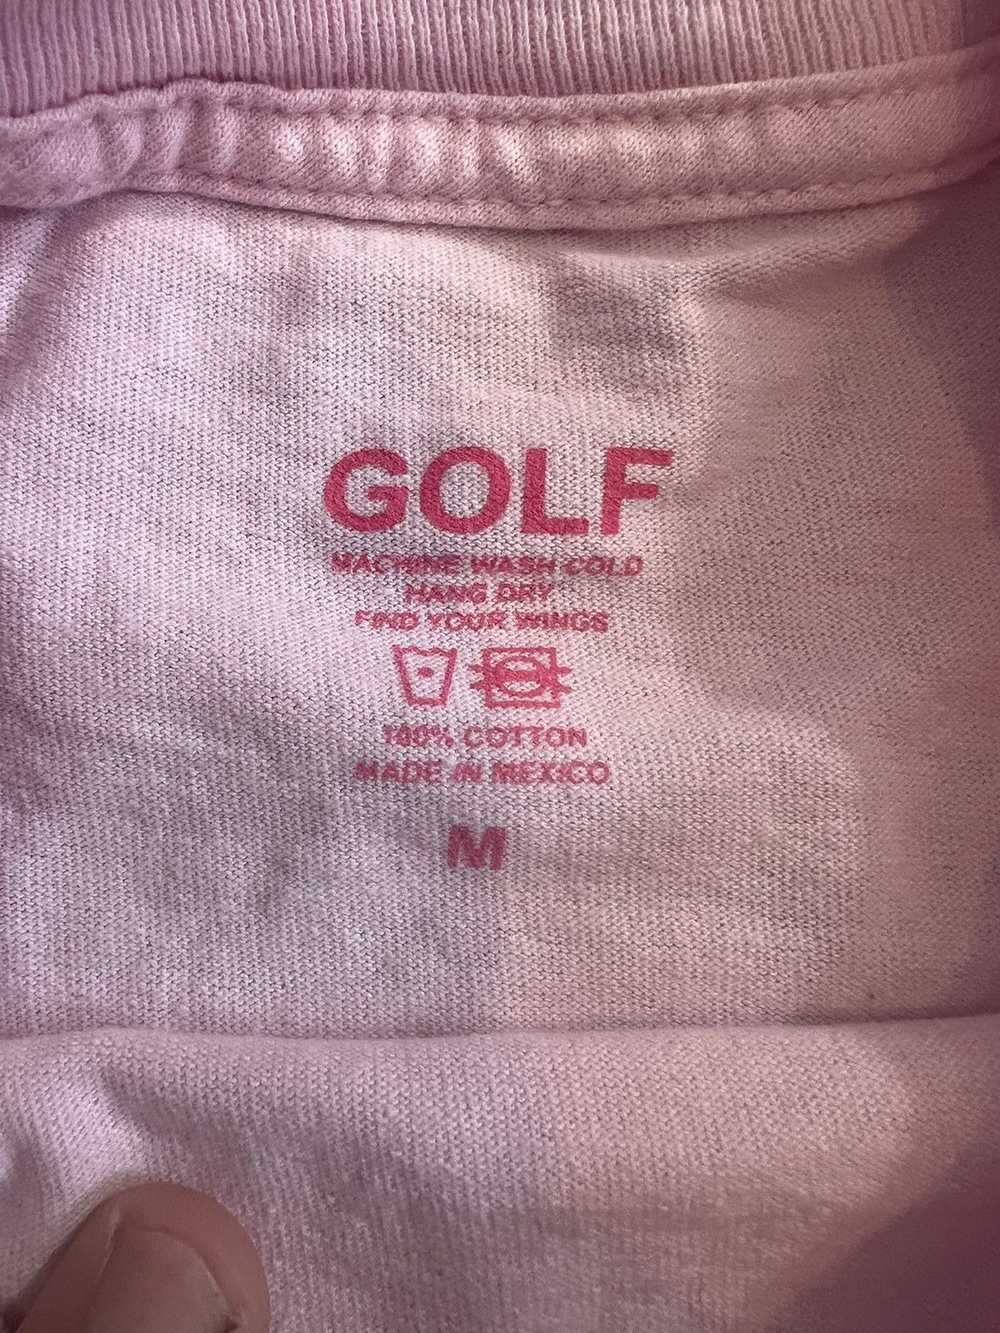 Golf Wang Golf Wang Missing Shirt - image 3